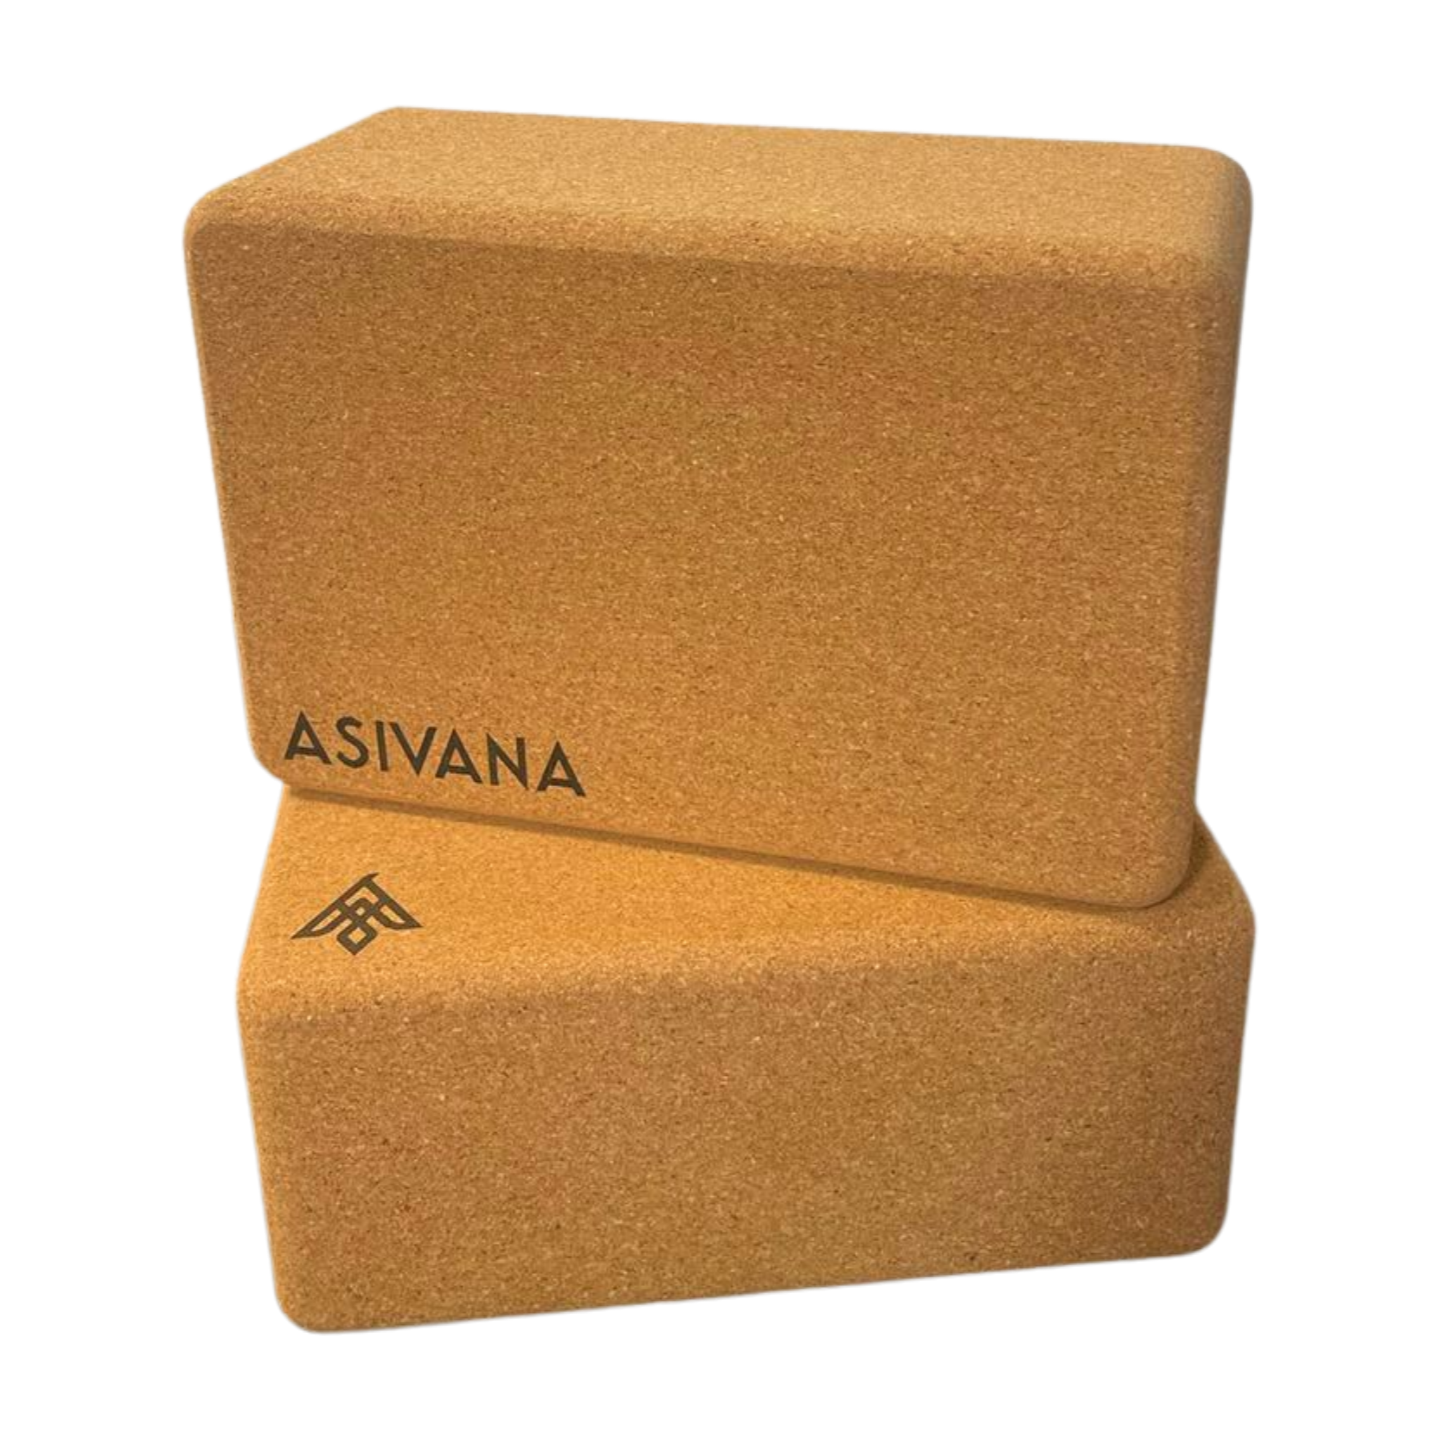 Asivana's Complete Yoga Kit for Beginners